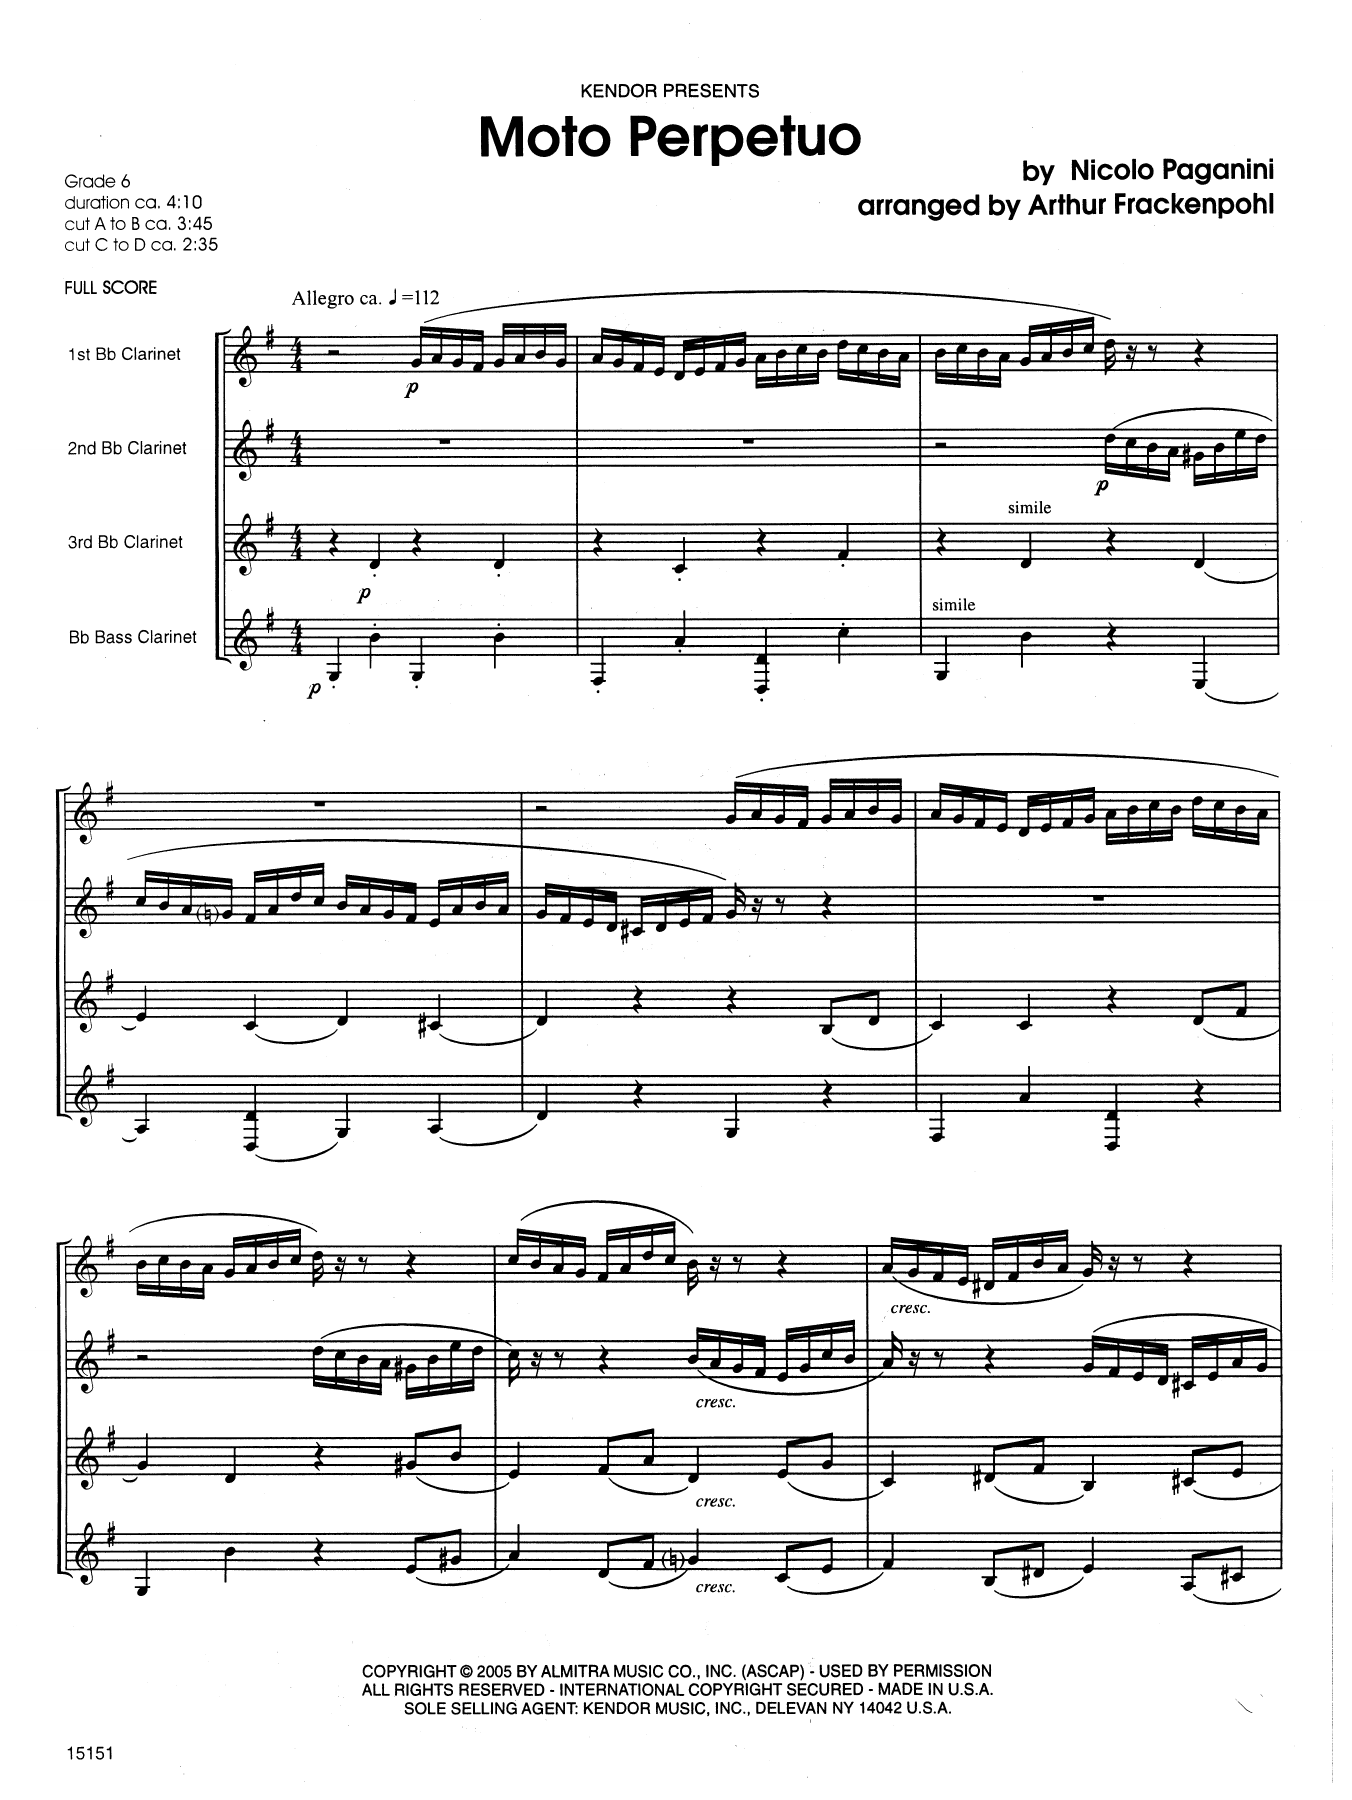 Download Arthur Frackenpohl Moto Perpetuo - Full Score Sheet Music